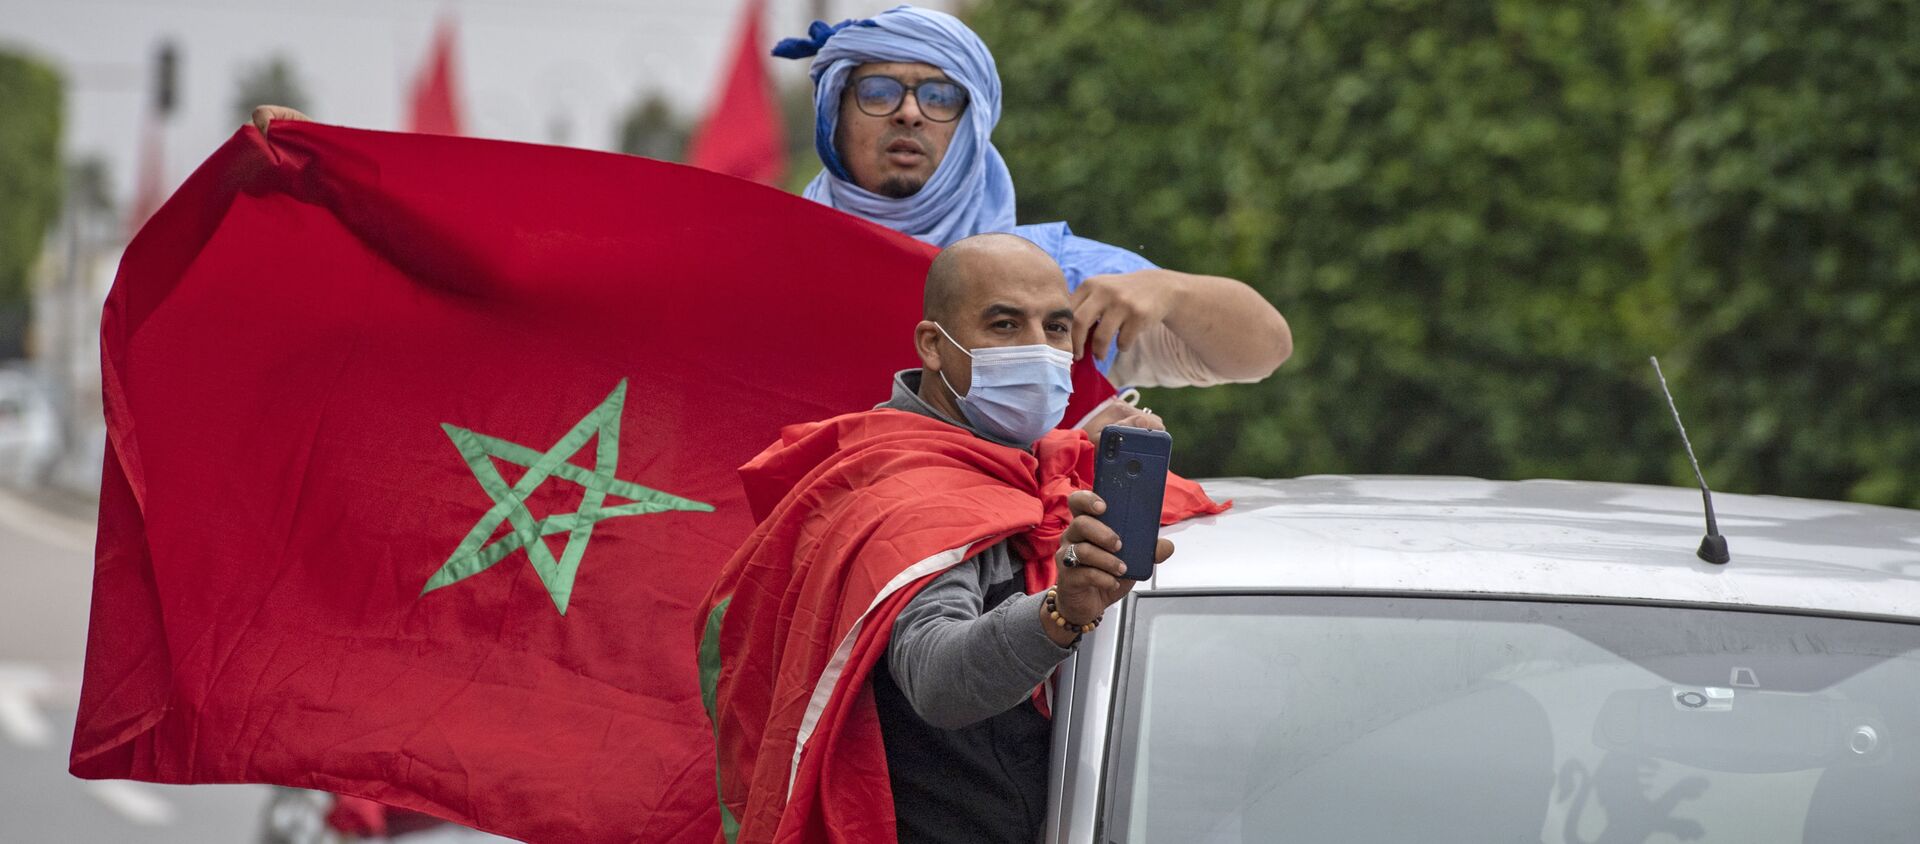 La gente con las banderas de Marrocco - Sputnik Mundo, 1920, 22.12.2020